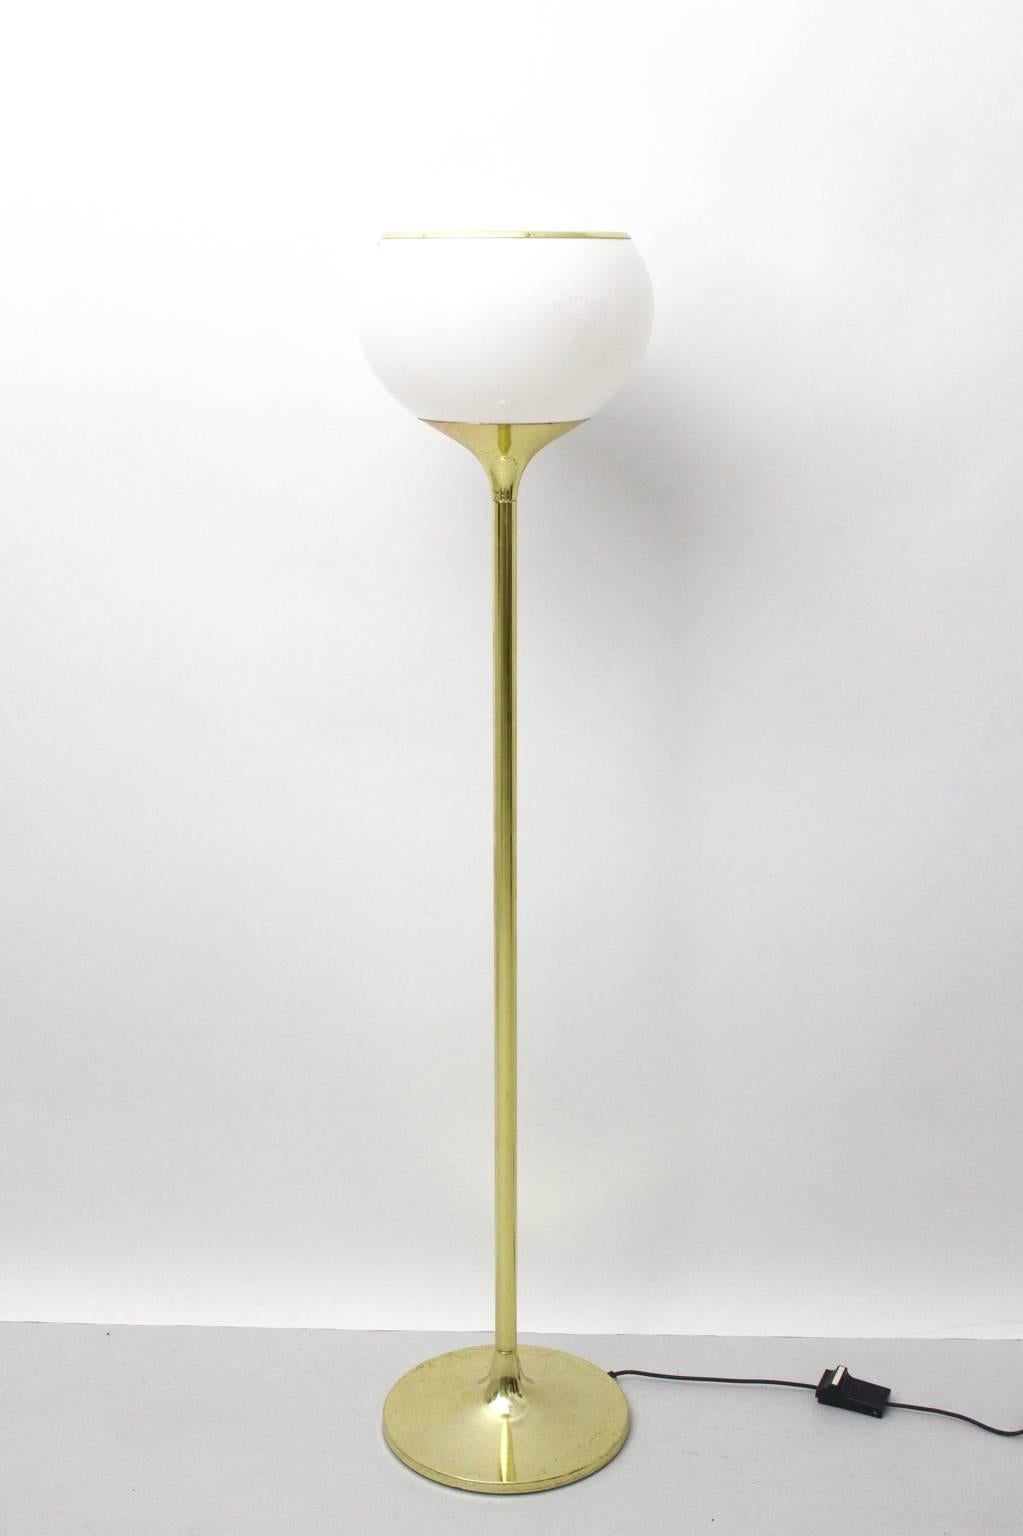 Le lampadaire vintage Space Age a été conçu par Harvey Guzzini et produit par Meblo, Italie, vers 1970.
Le lampadaire est composé de laiton et de plexiglas et séduit par son design simple.
Étiqueté avec le nom de la société Meblo.
Une douille pour